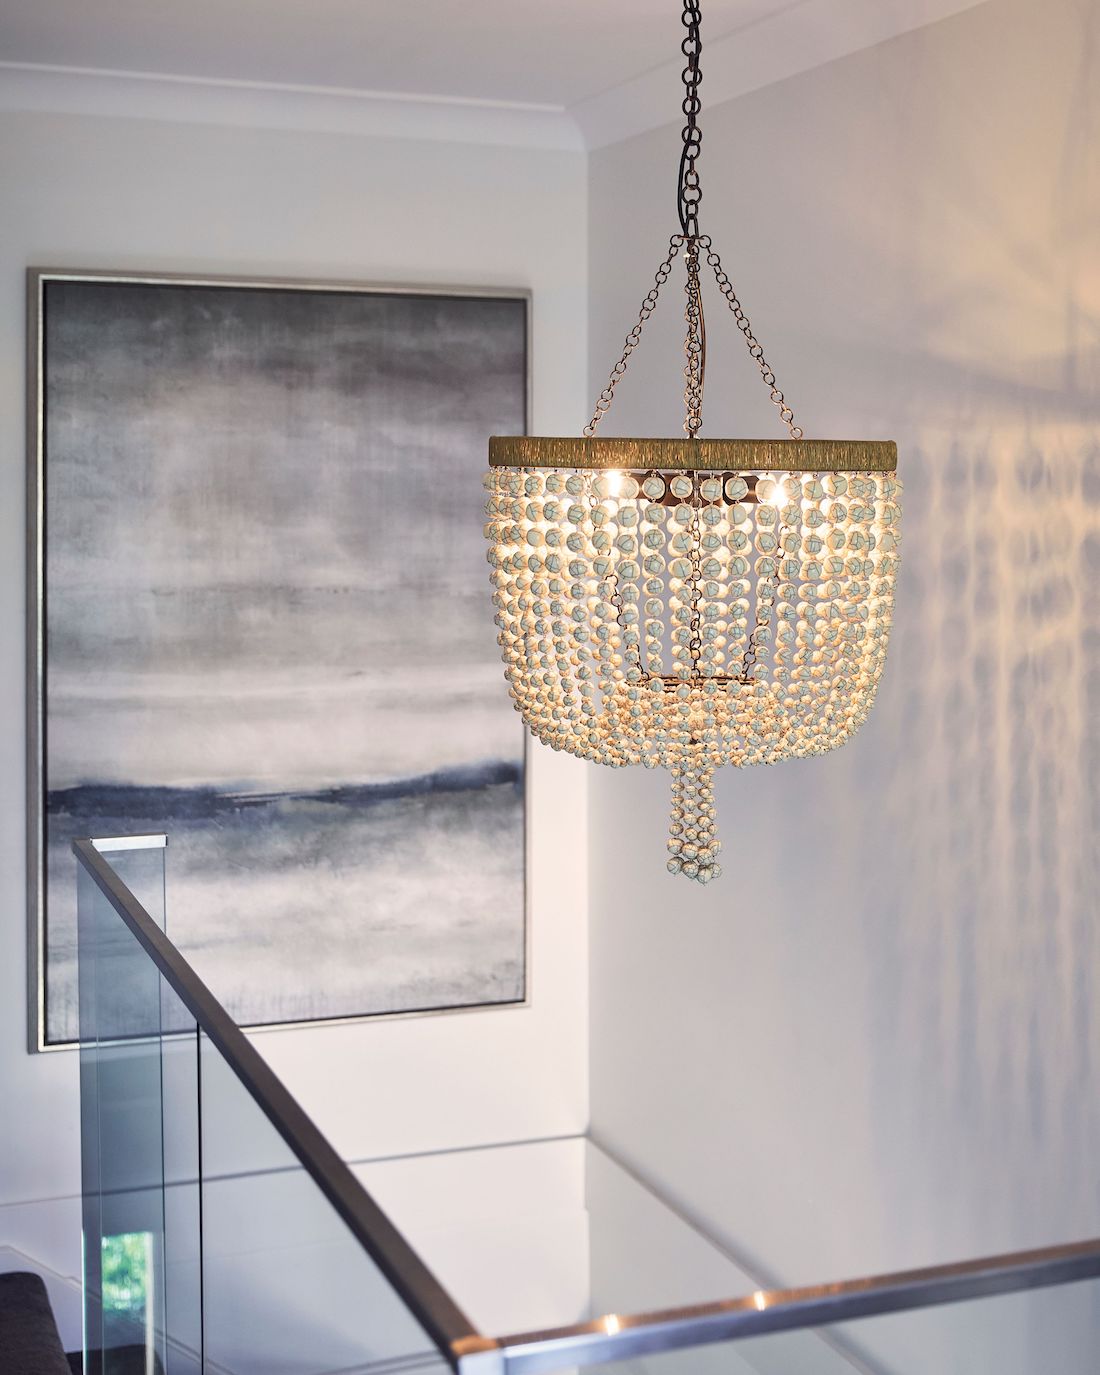 Hamptons style chandelier over void